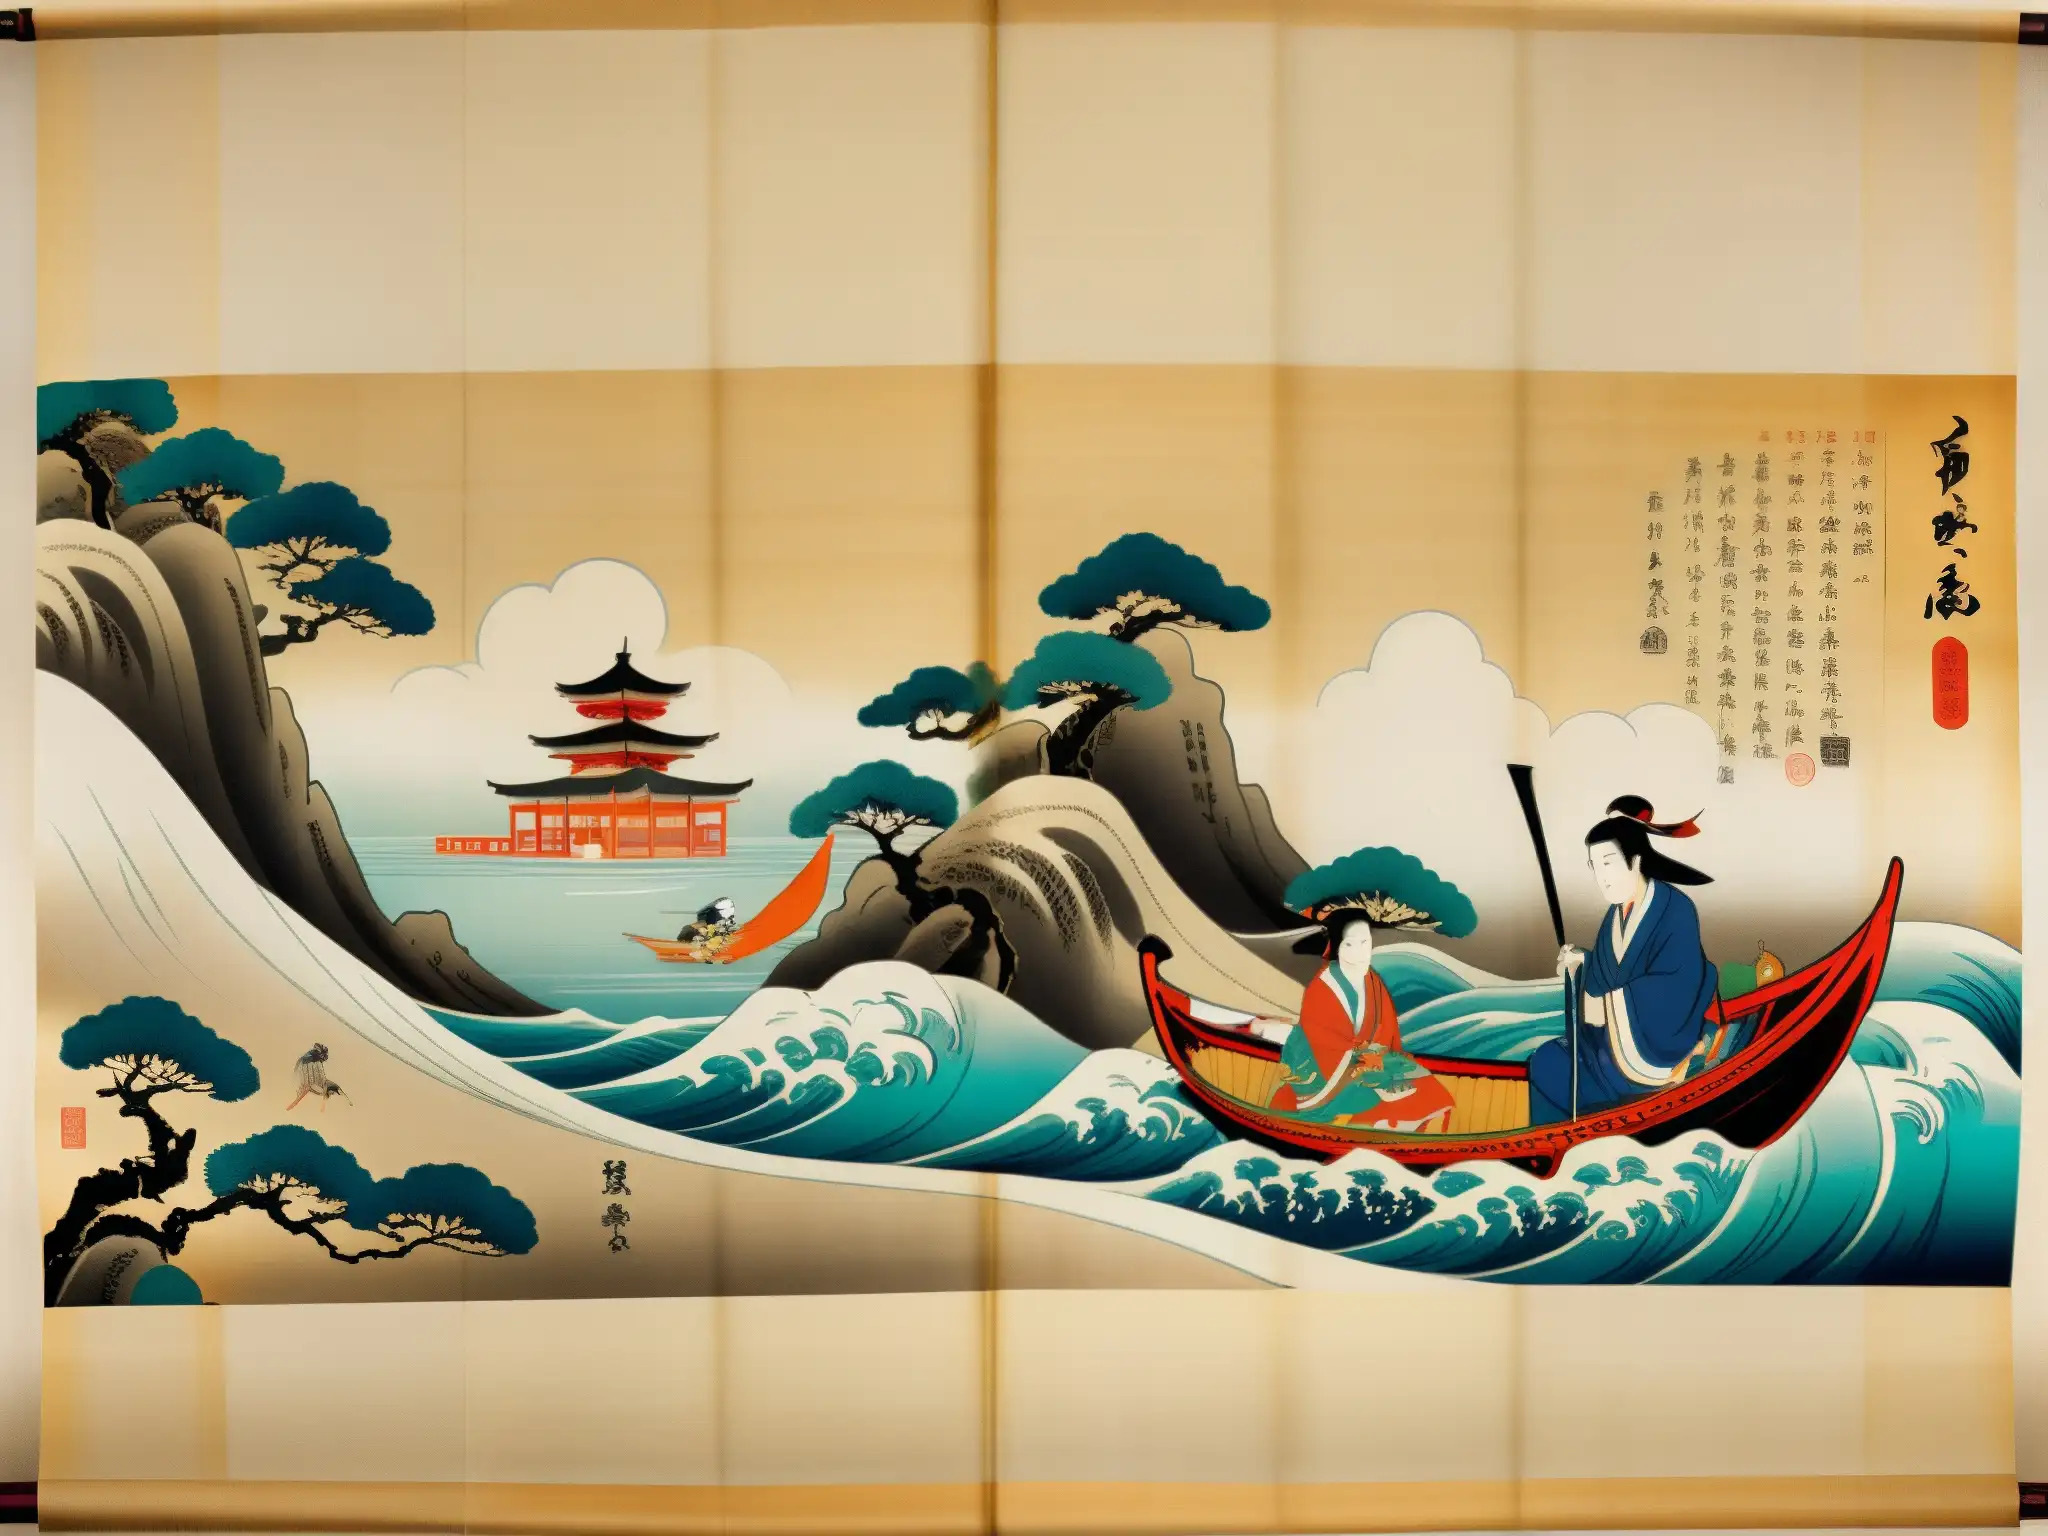 Detalle de pergamino japonés con leyendas urbanas preservadas digitalmente